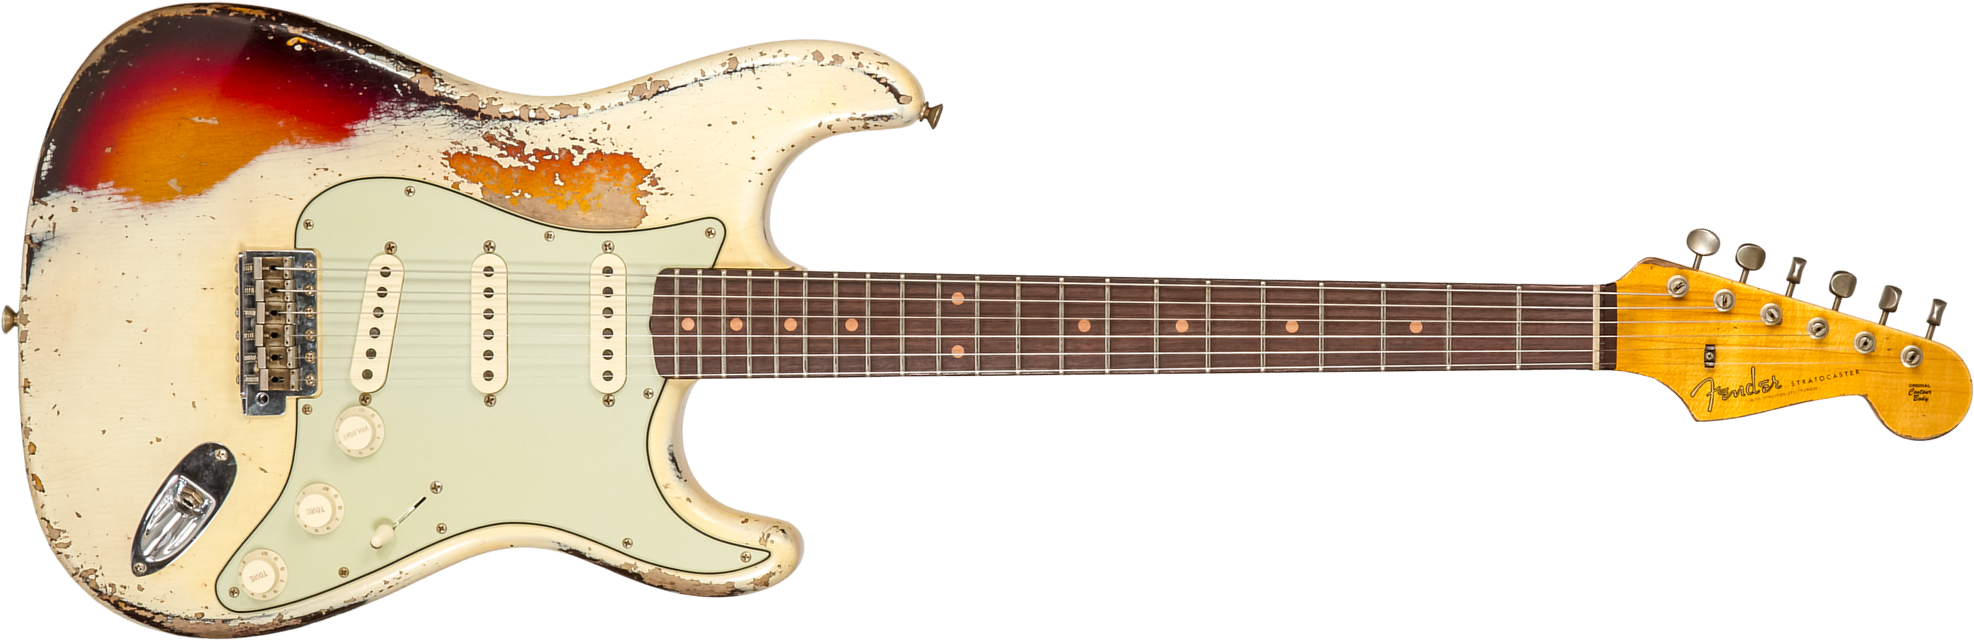 Fender Custom Shop Strat 1959 3s Trem Rw #cz576189 - Super Heavy Relic Vintage White O. 3-color Sunburs - Guitare Électrique Forme Str - Main picture